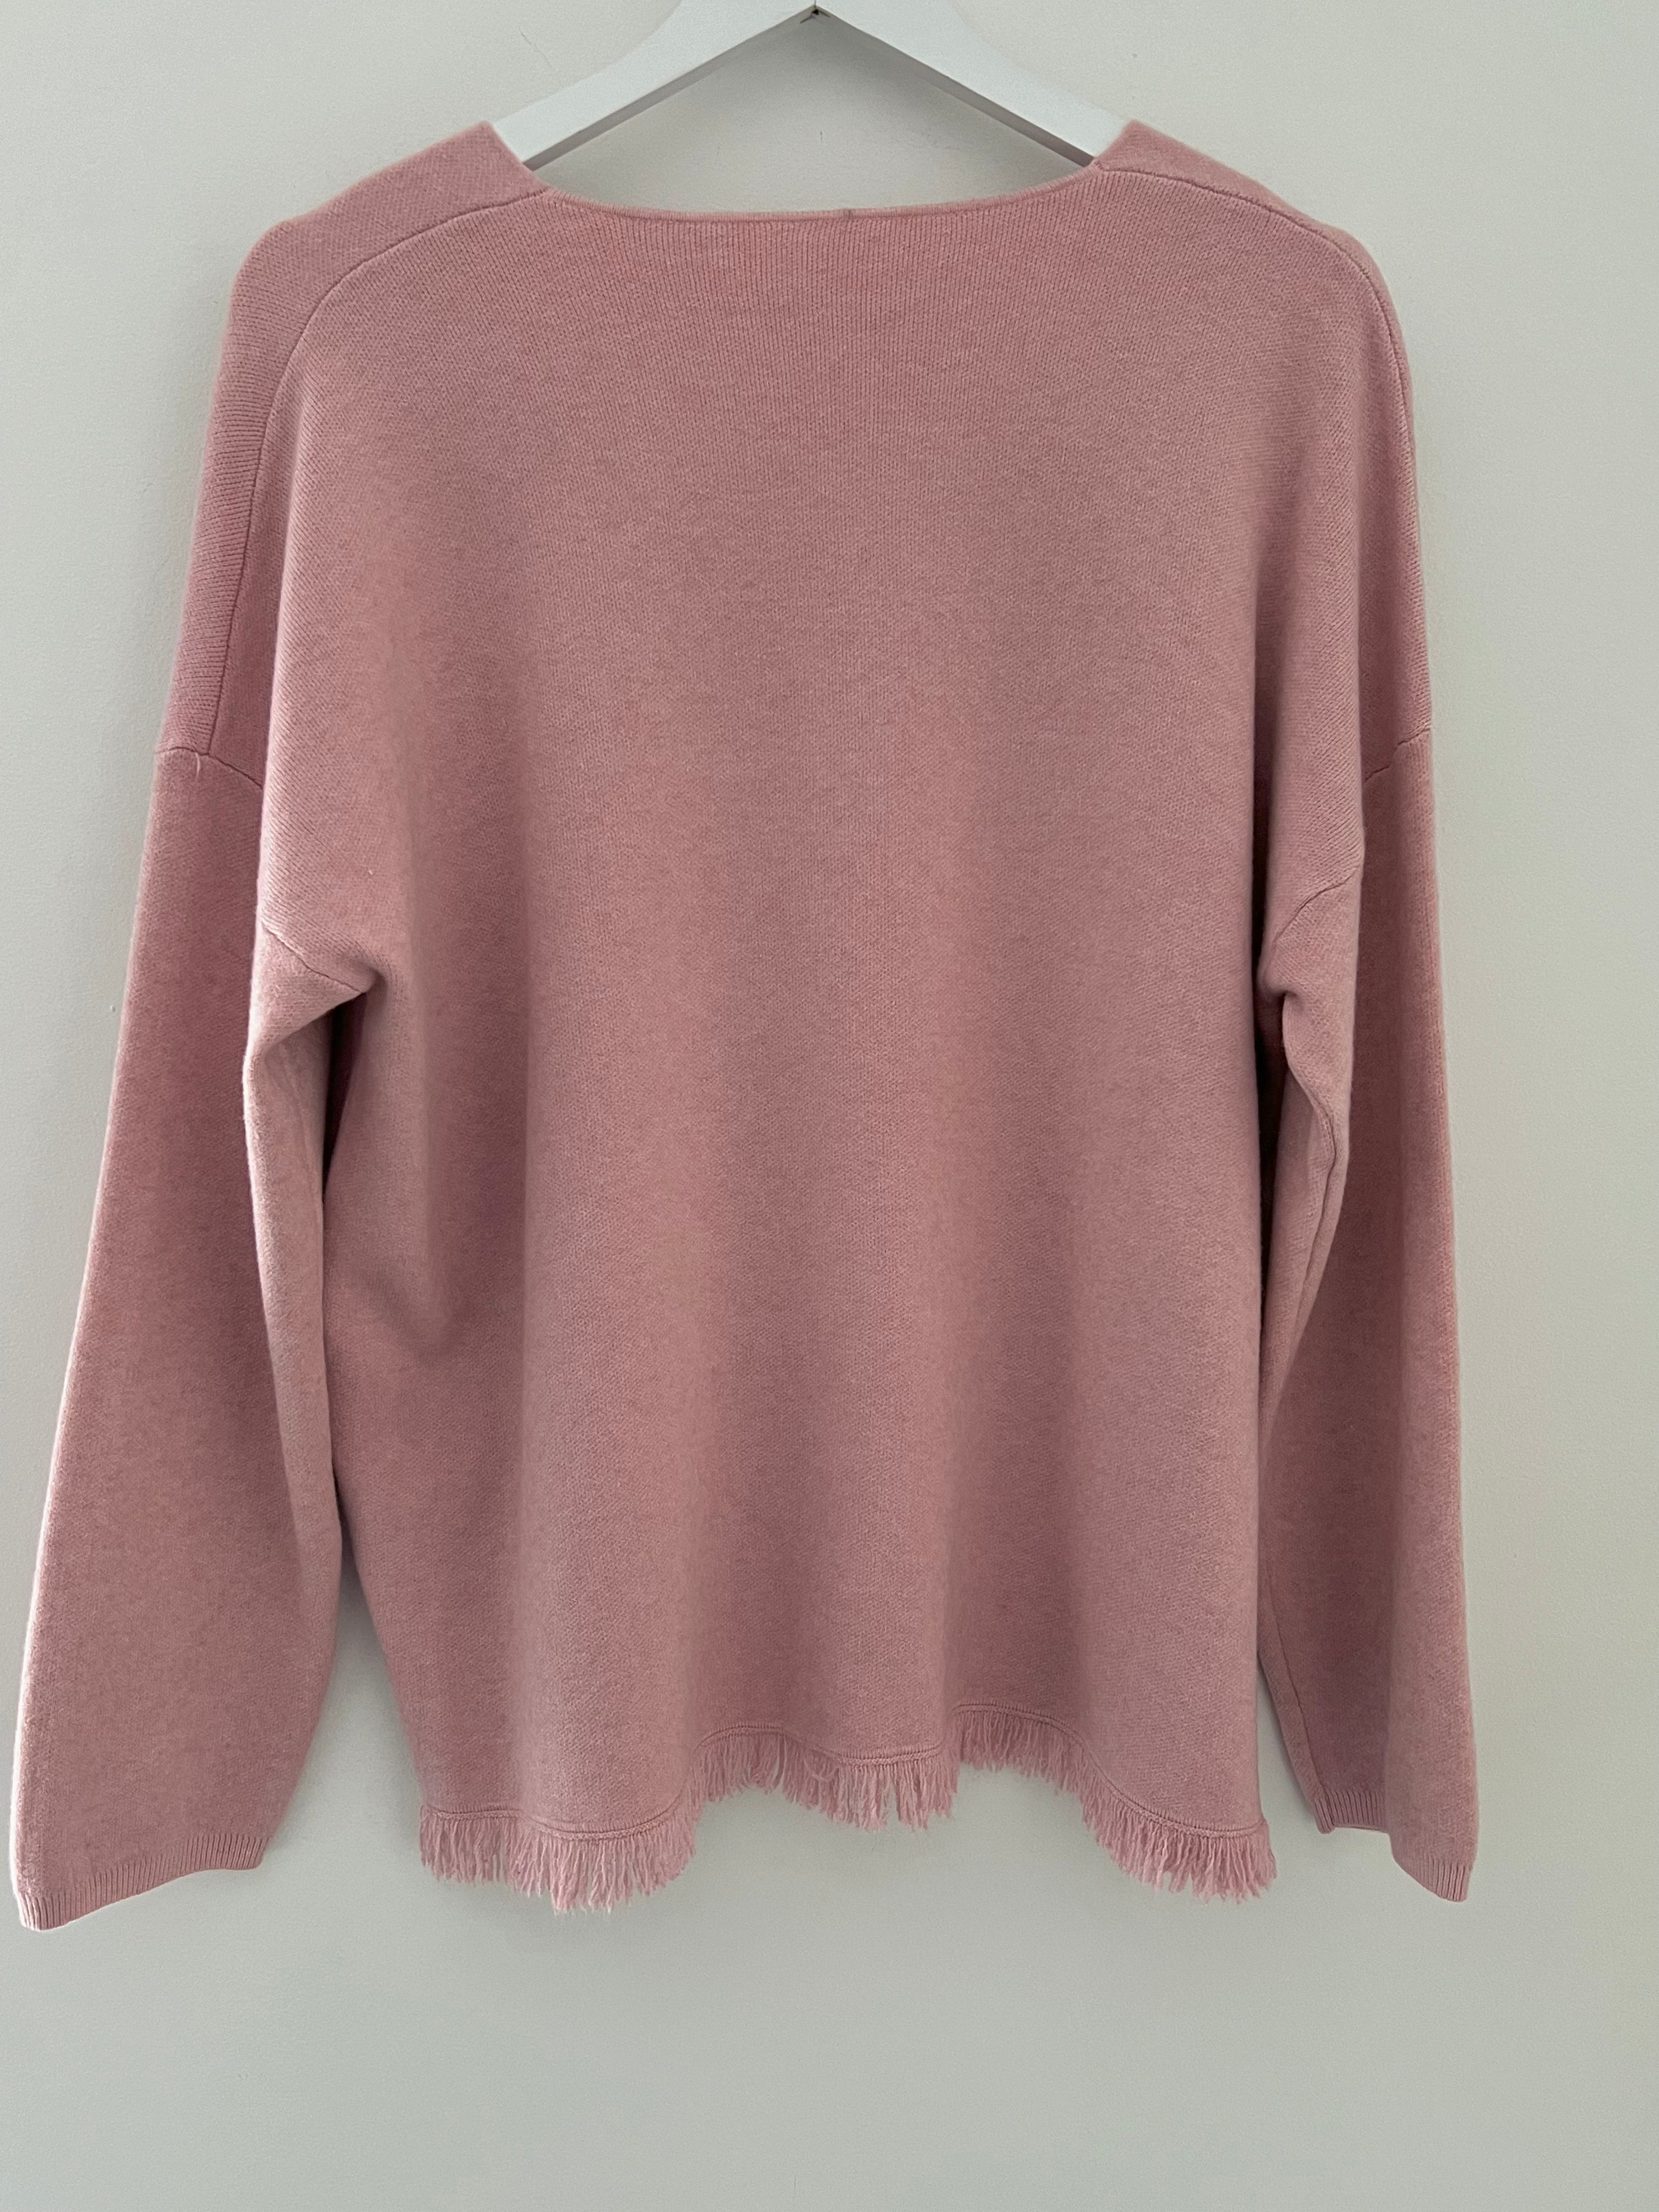 V Neck Fringe Sweater in Soft Pink